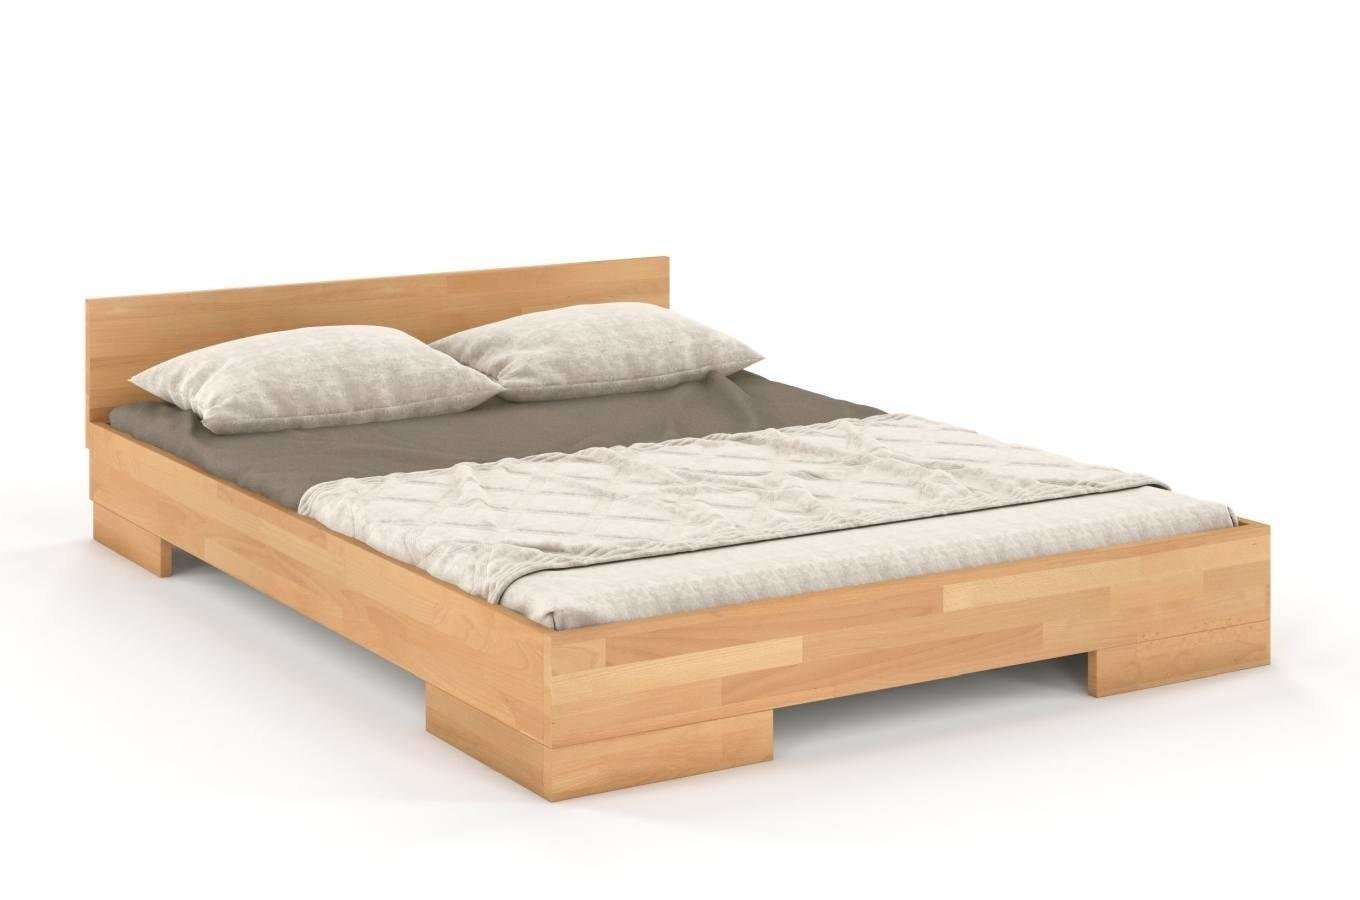 Łóżko drewniane bukowe Skandica SPECTRUM Long (długość + 20 cm) / 90x220 cm, kolor naturalny